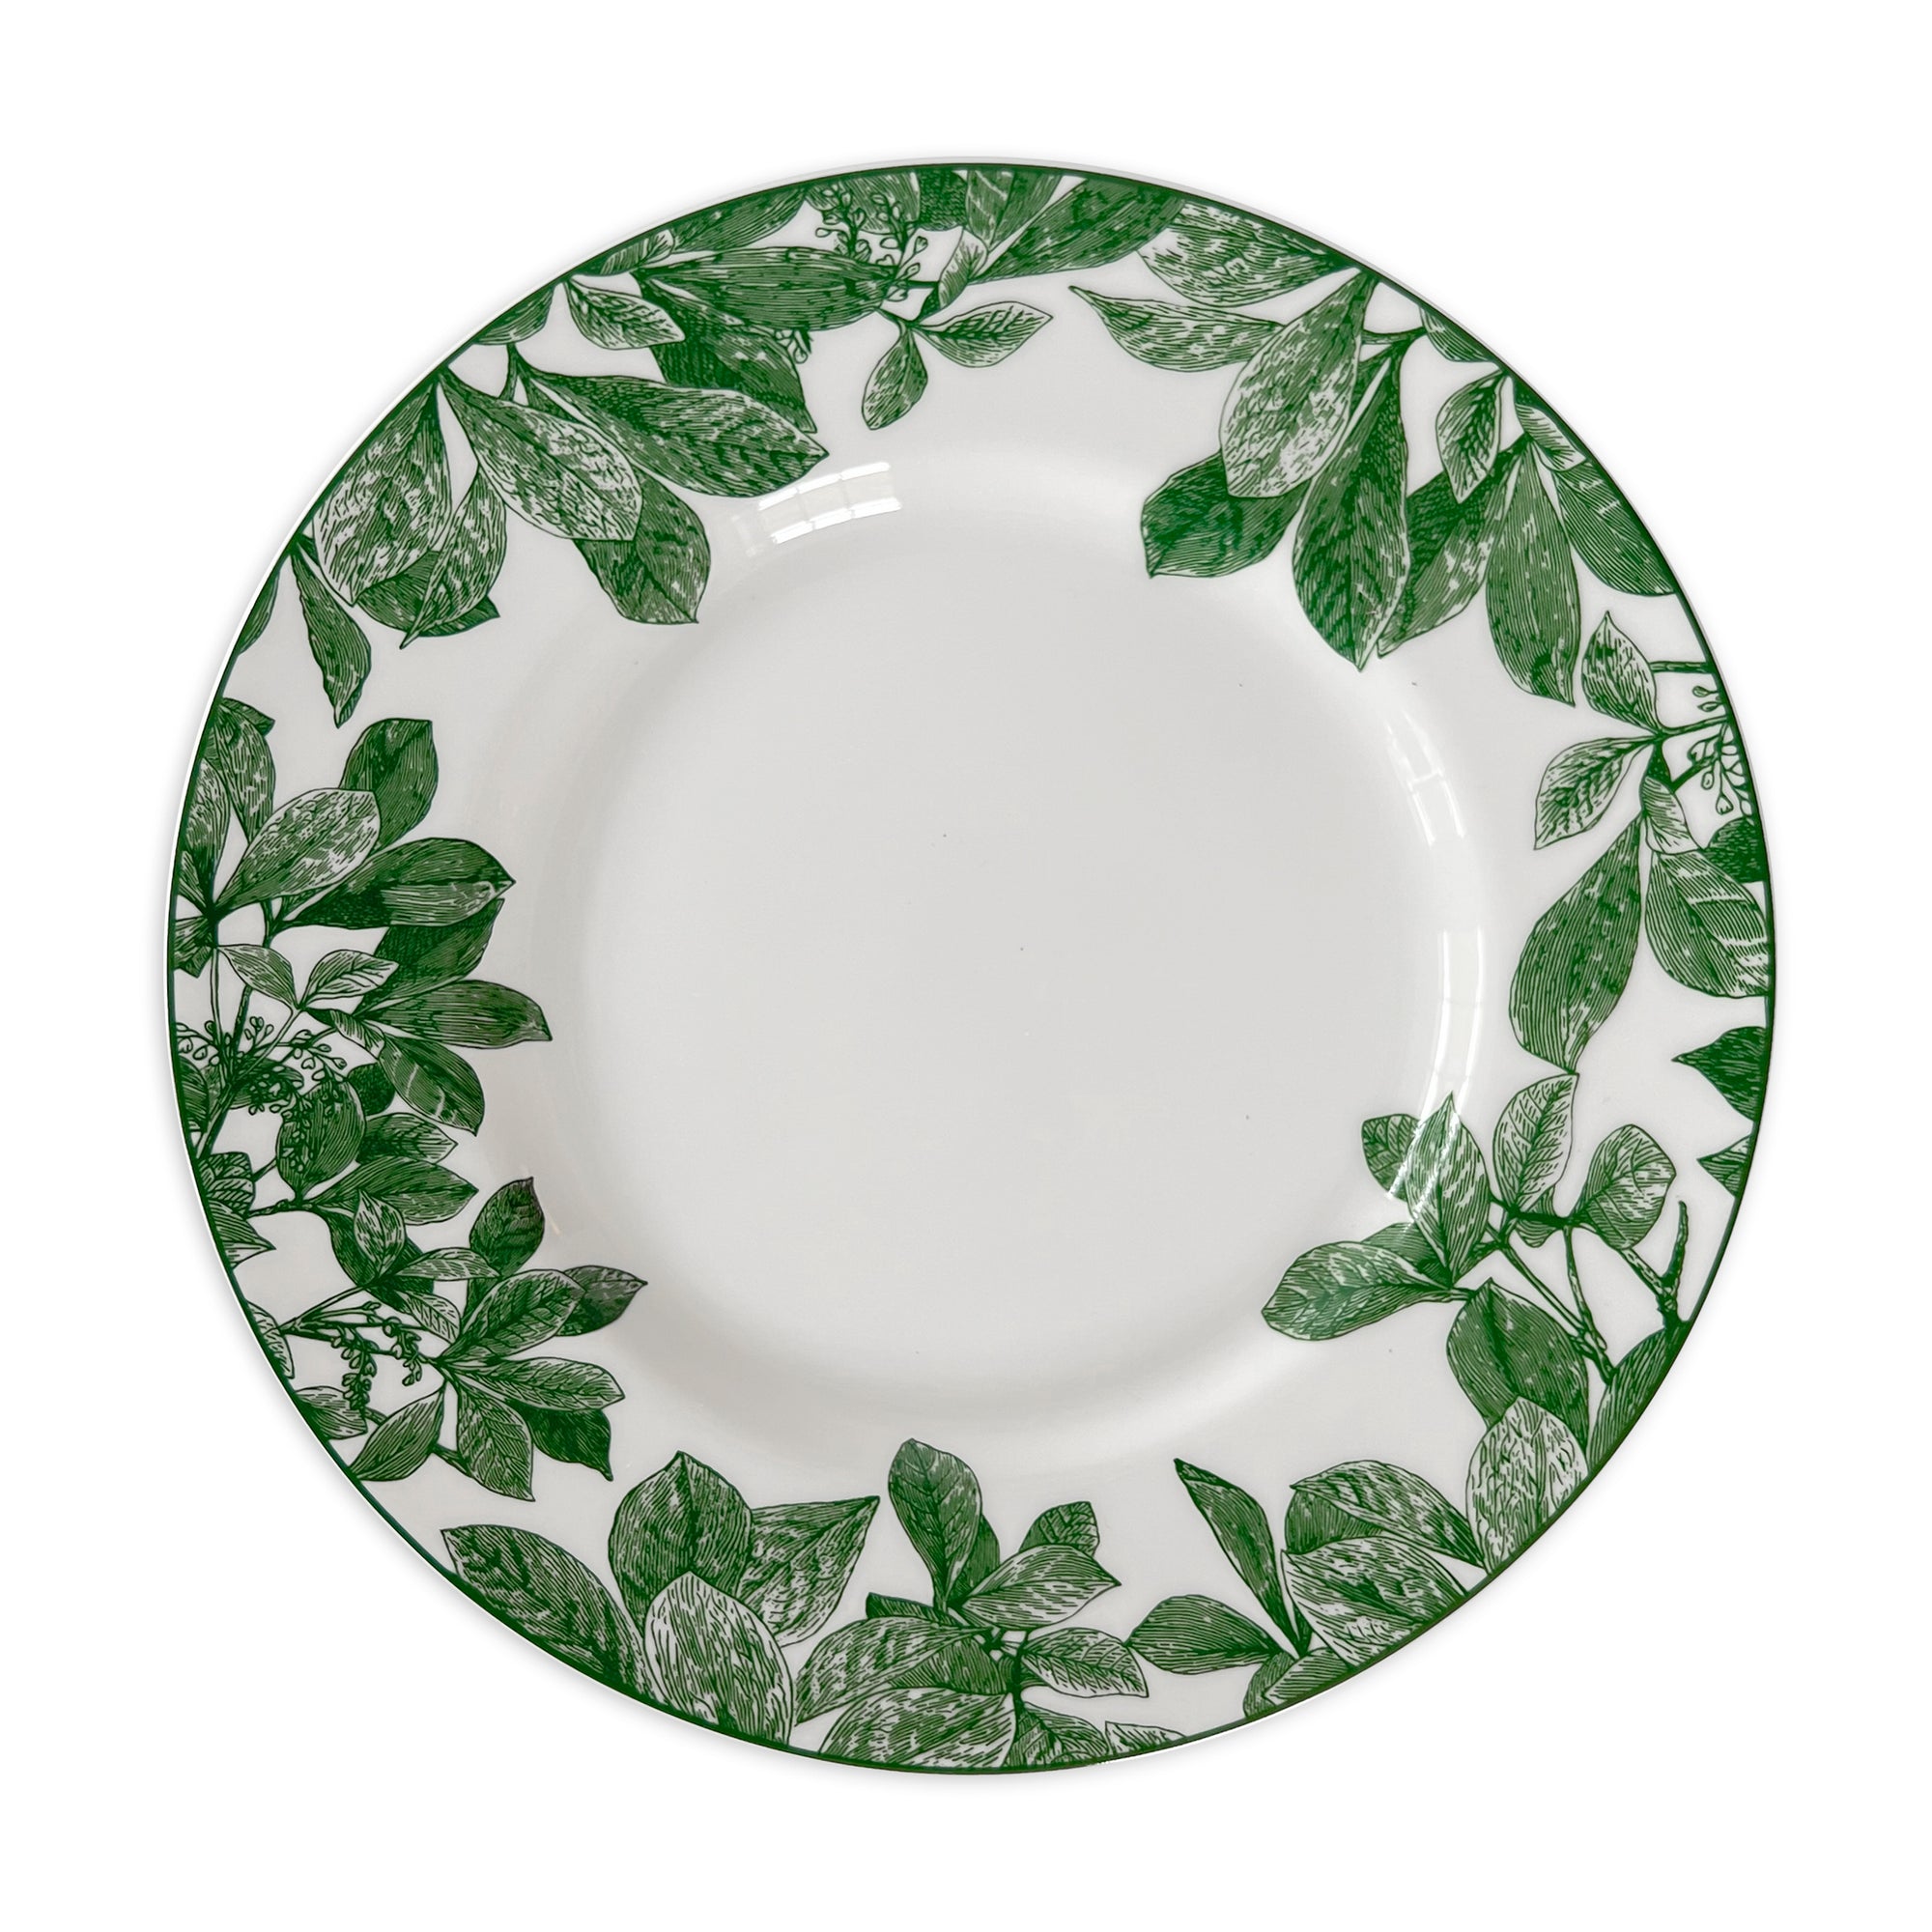 Arbor Green Porcelain Dinner Plate from Caskata.